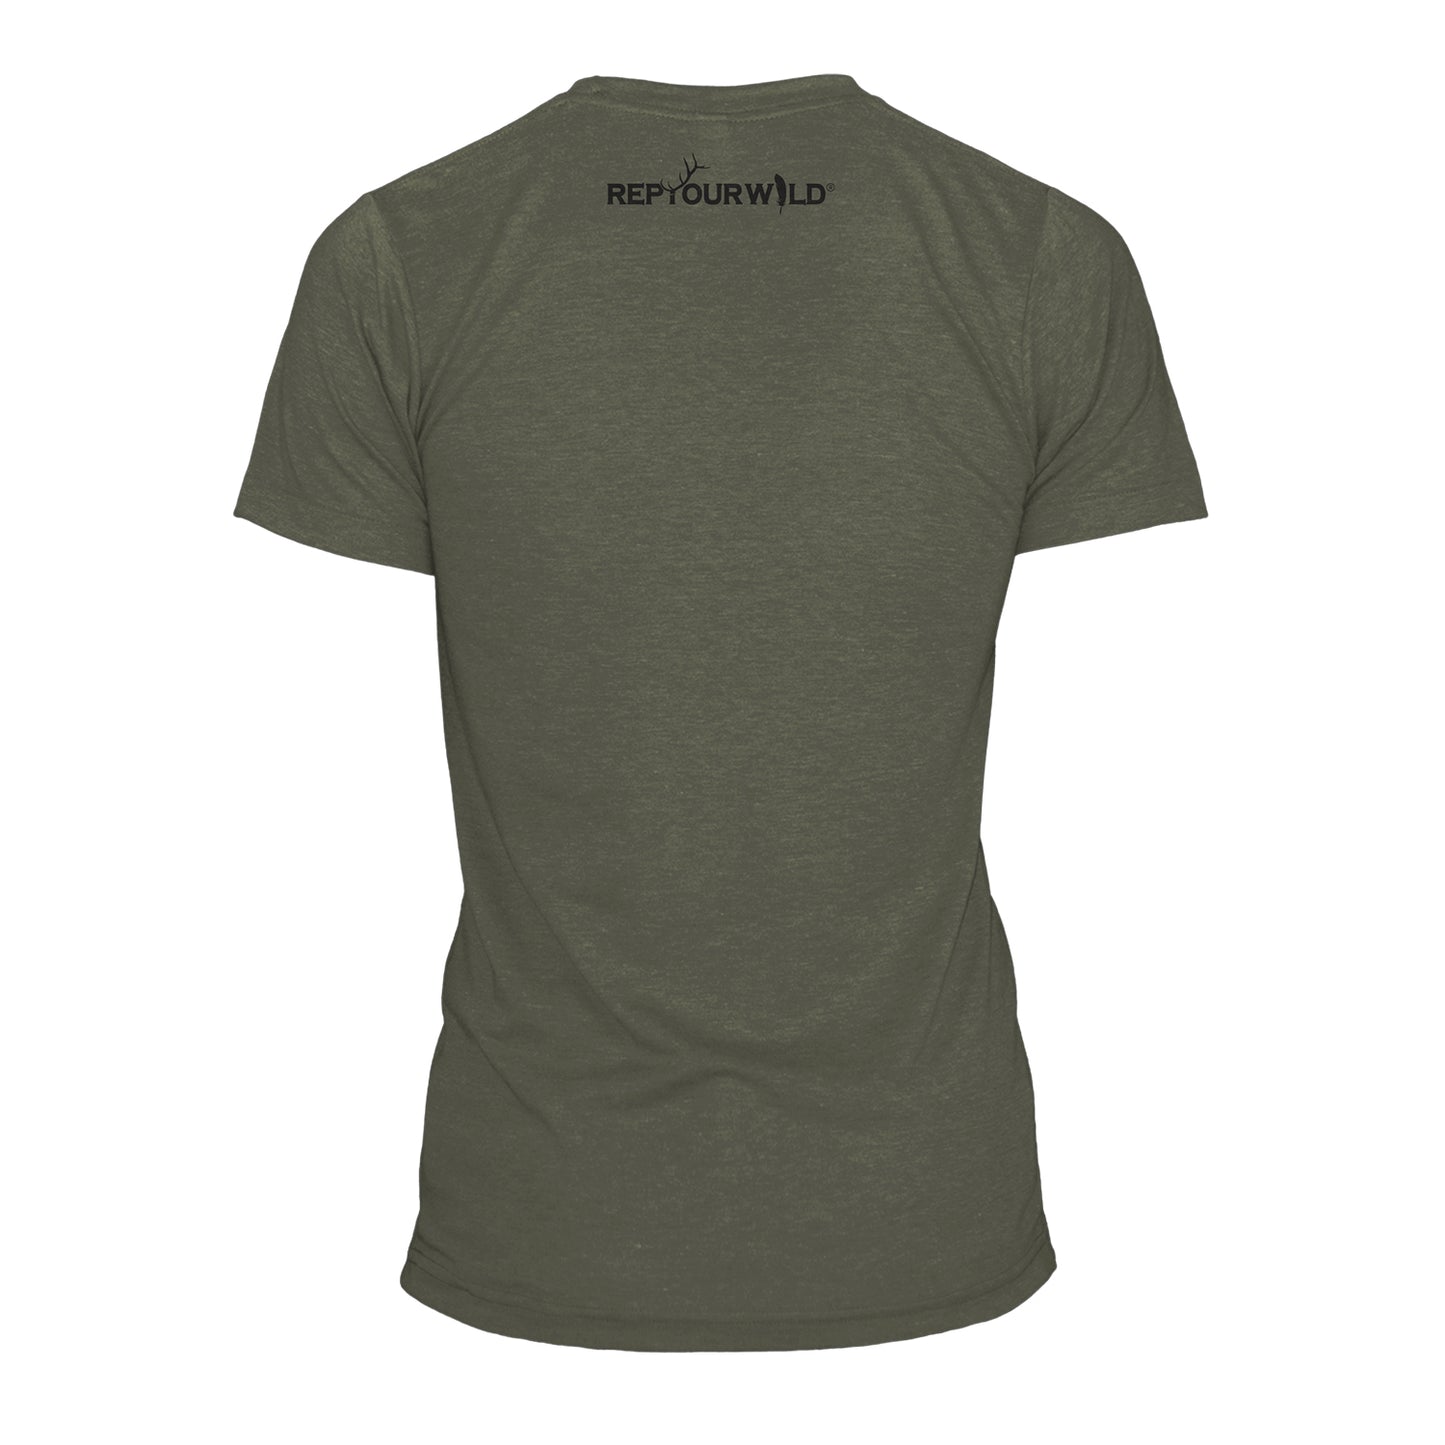 A short sleeved green shirt reads repyourwild below the collar